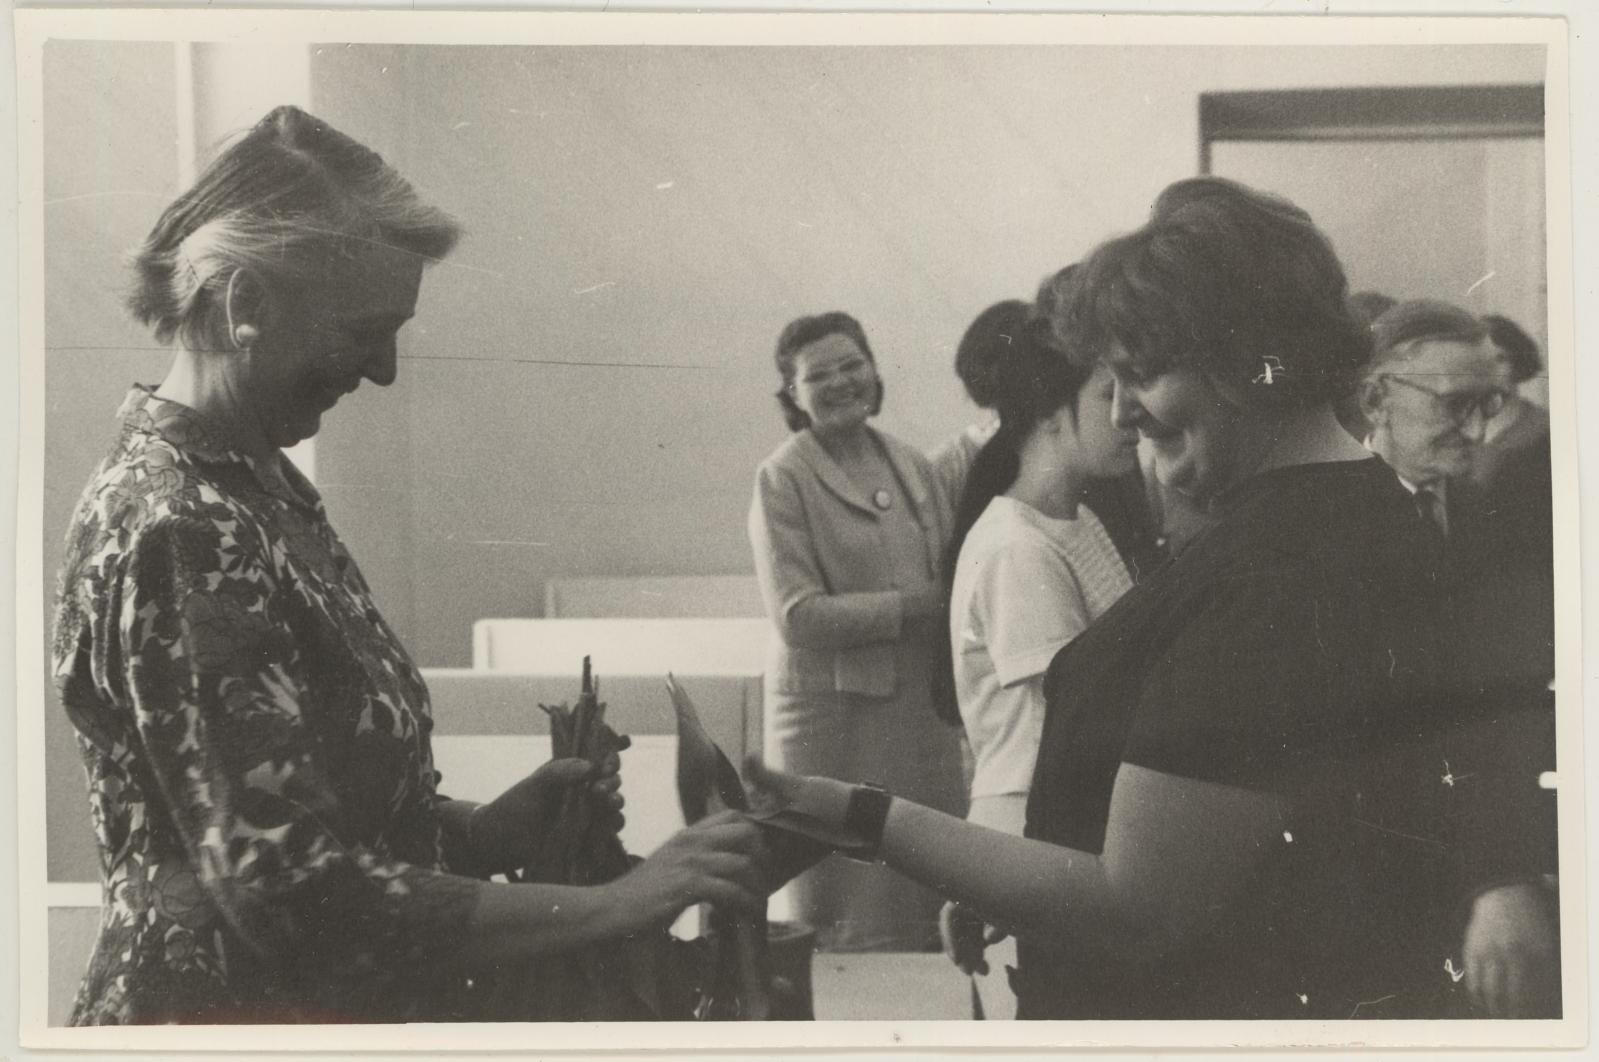 Helene Kuma keraamikanäituse avamine 21.05.1971. Eha Raend õnnitleb Helene Kuma Tartu tarbekunstnike nimel.